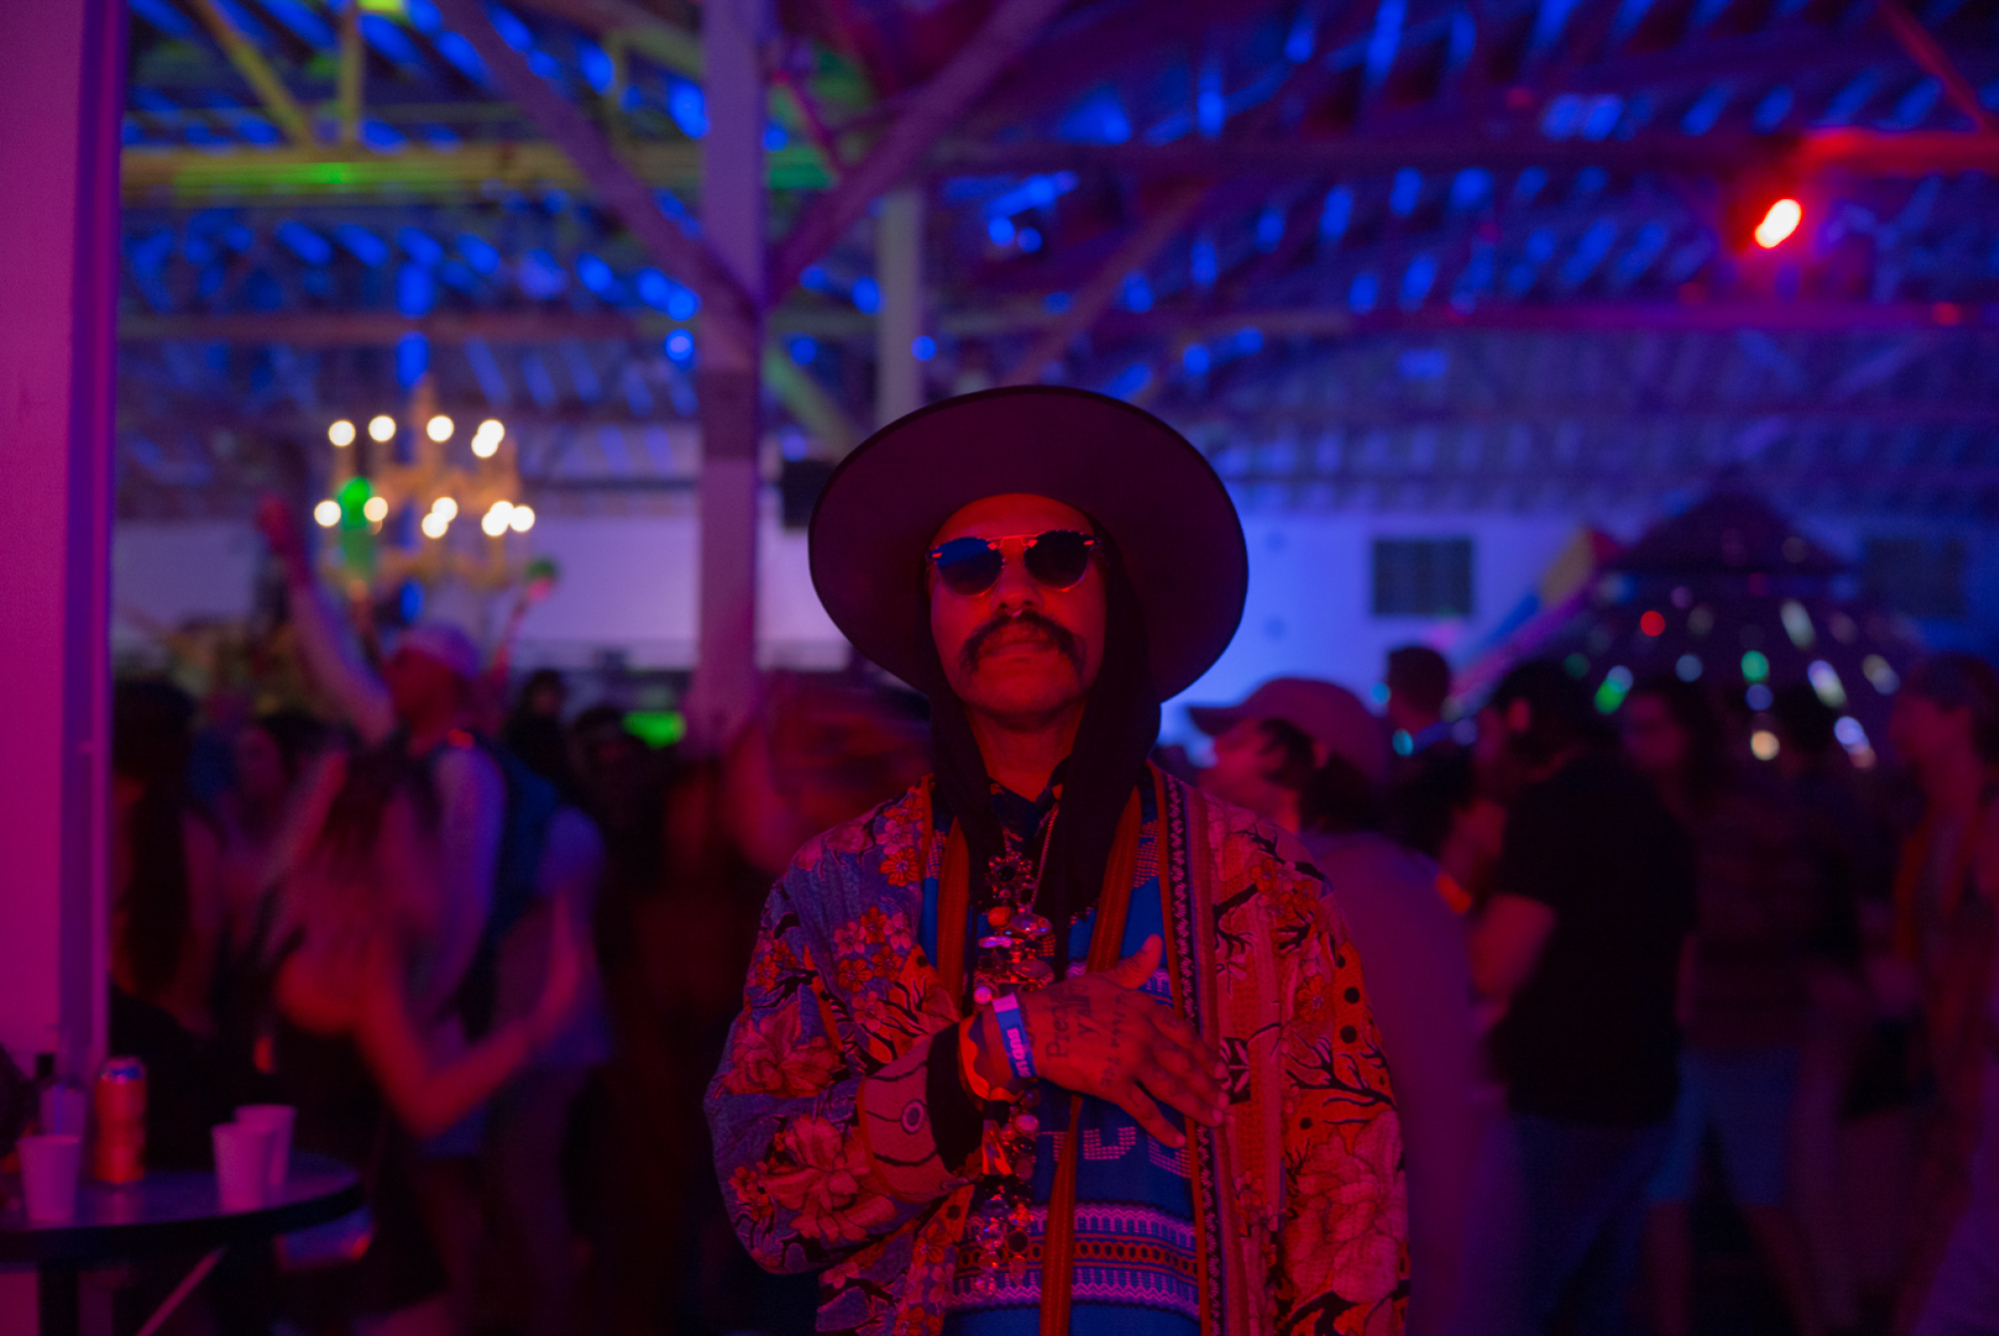 Un festivalier pose sous une lumière rouge et bleue avec une foule dansante derrière lui.